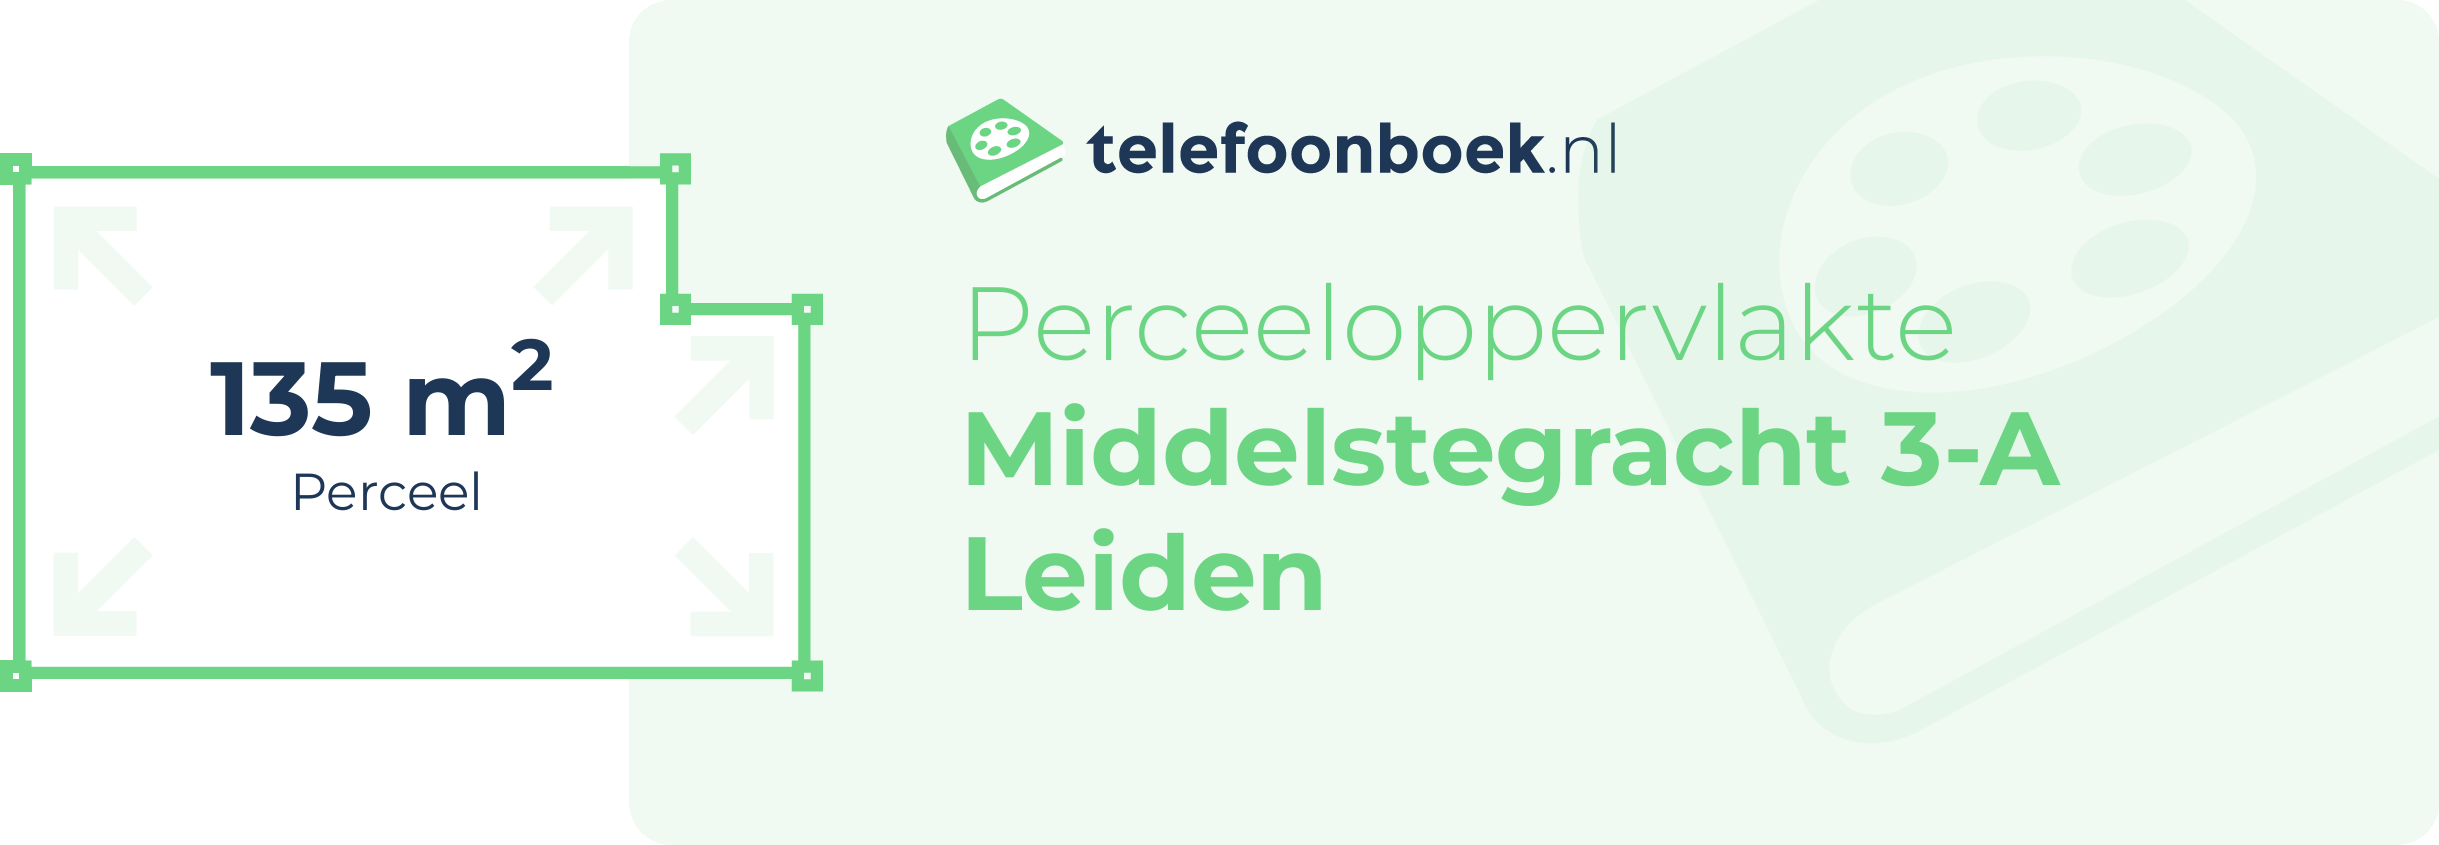 Perceeloppervlakte Middelstegracht 3-A Leiden